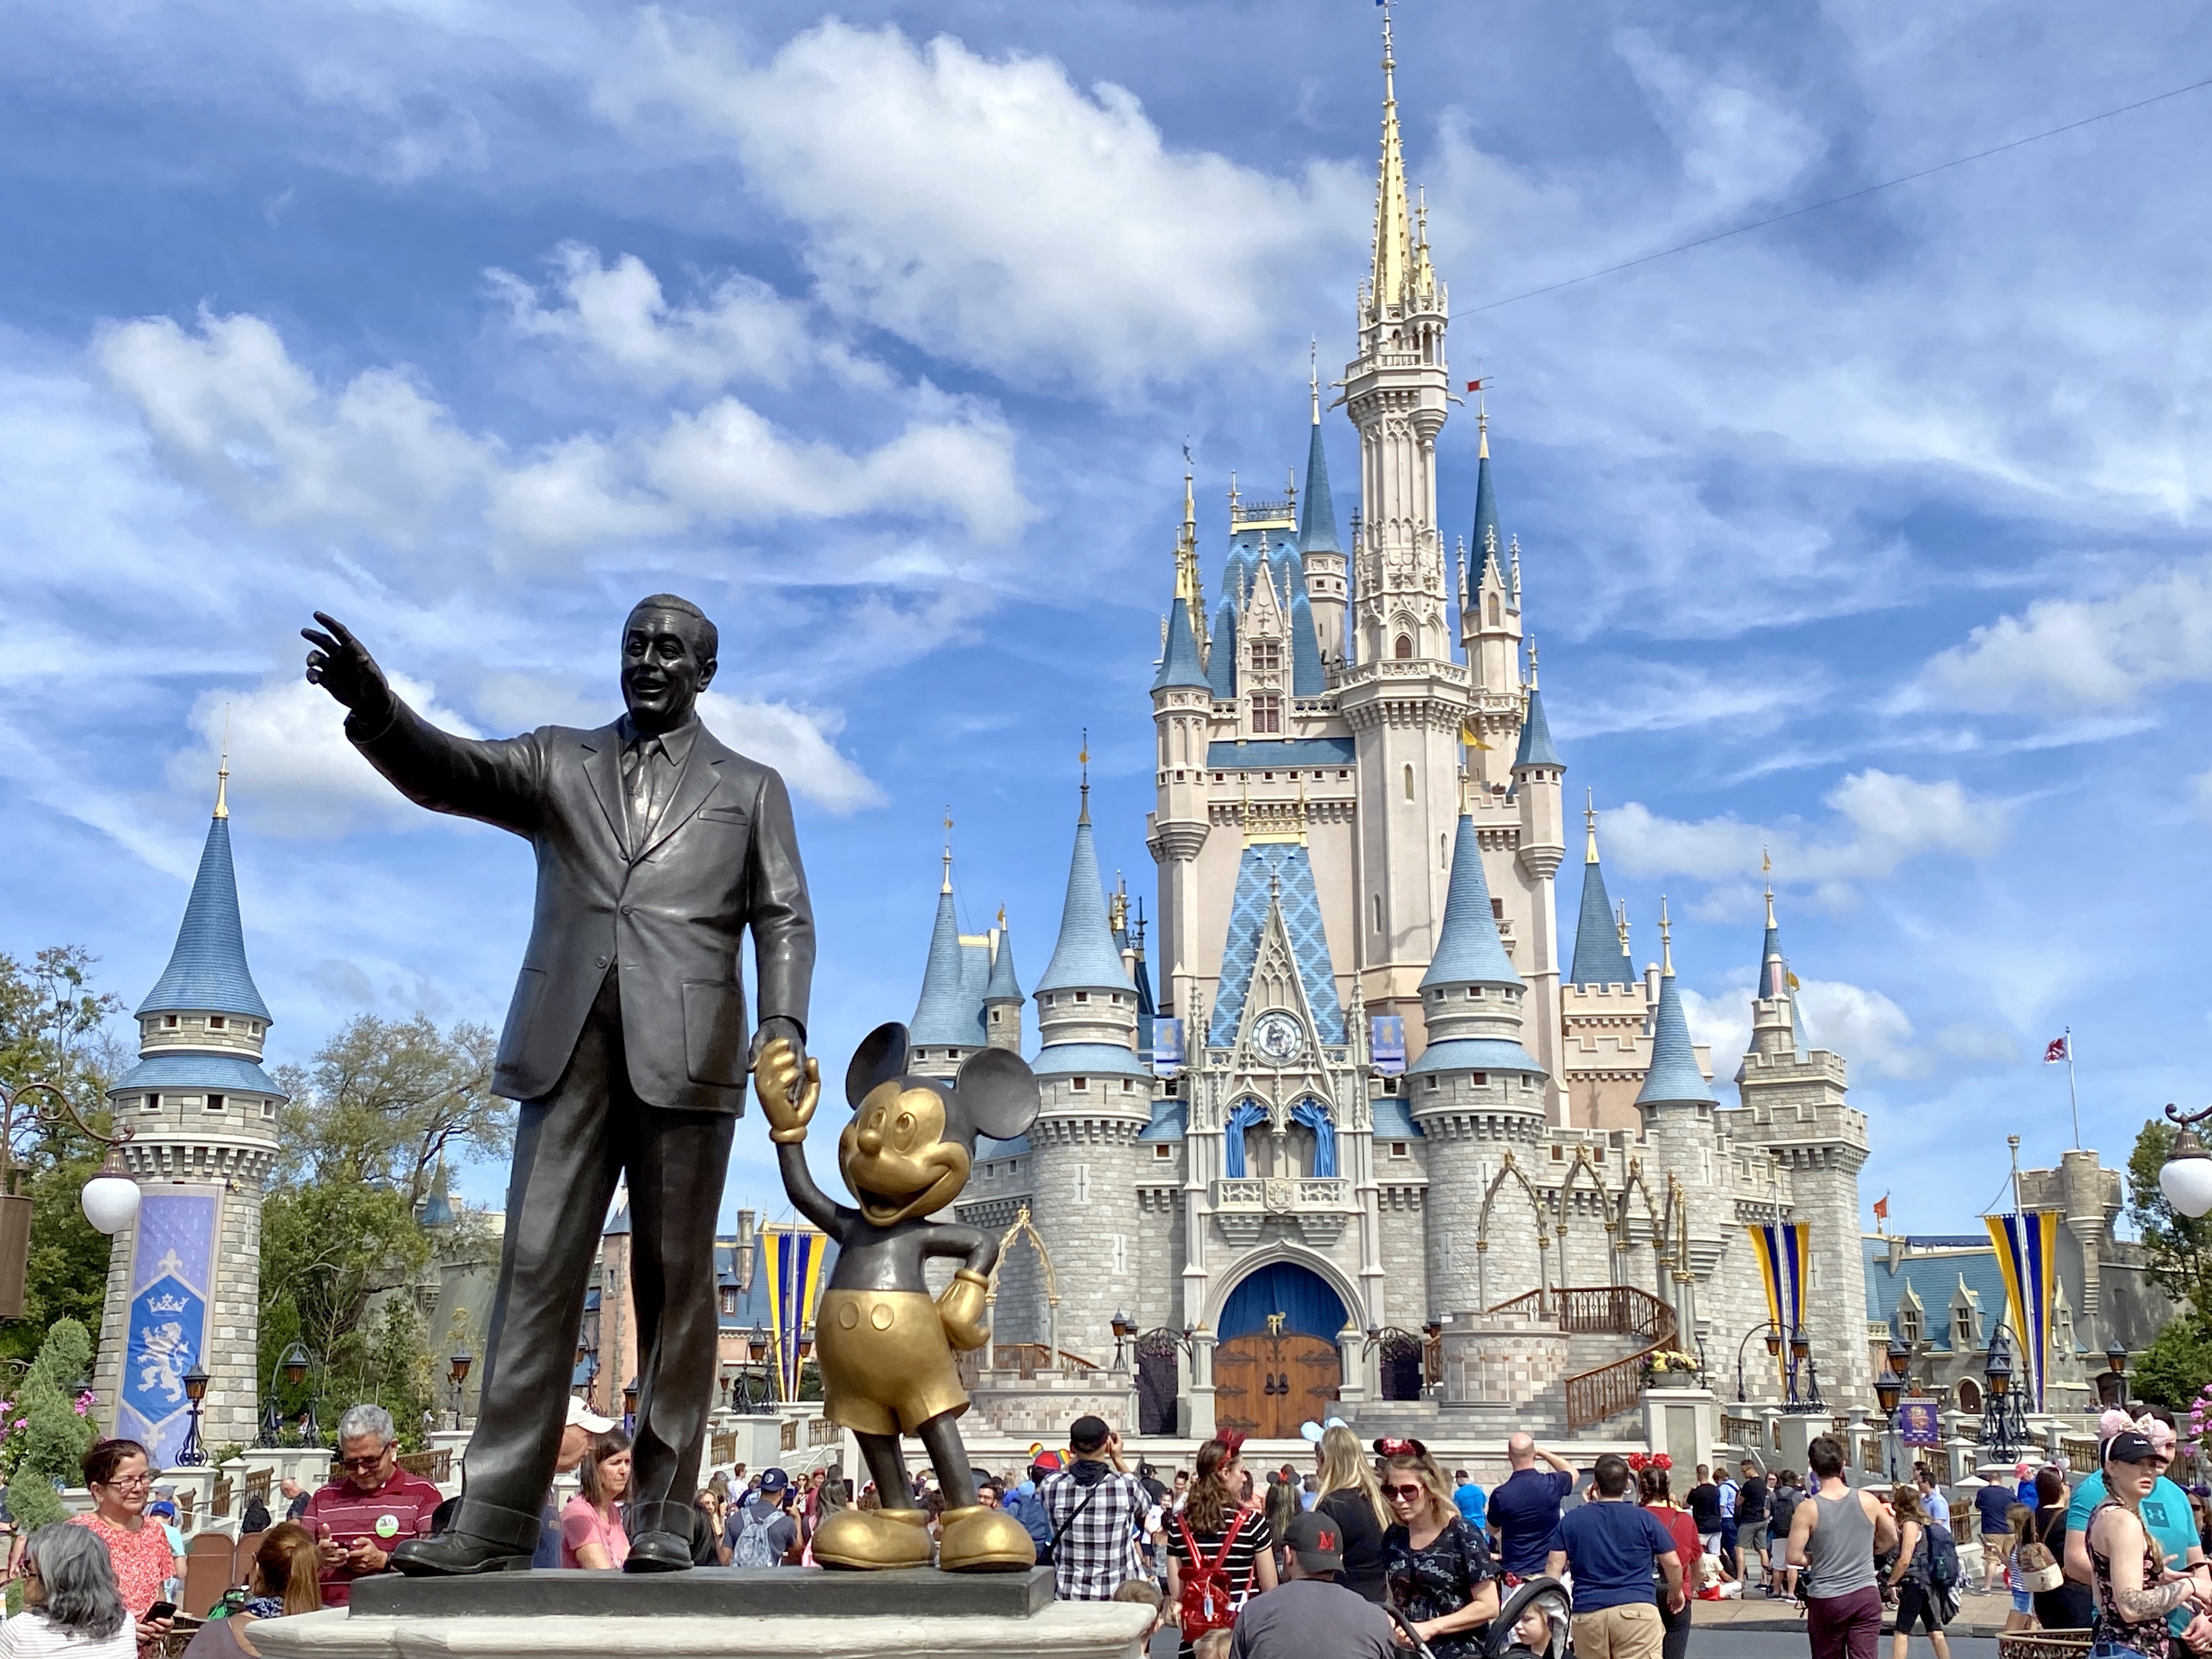 Disney anuncia que abrirá más del 50% de sus hoteles y complejos turísticos este mes de septiembre